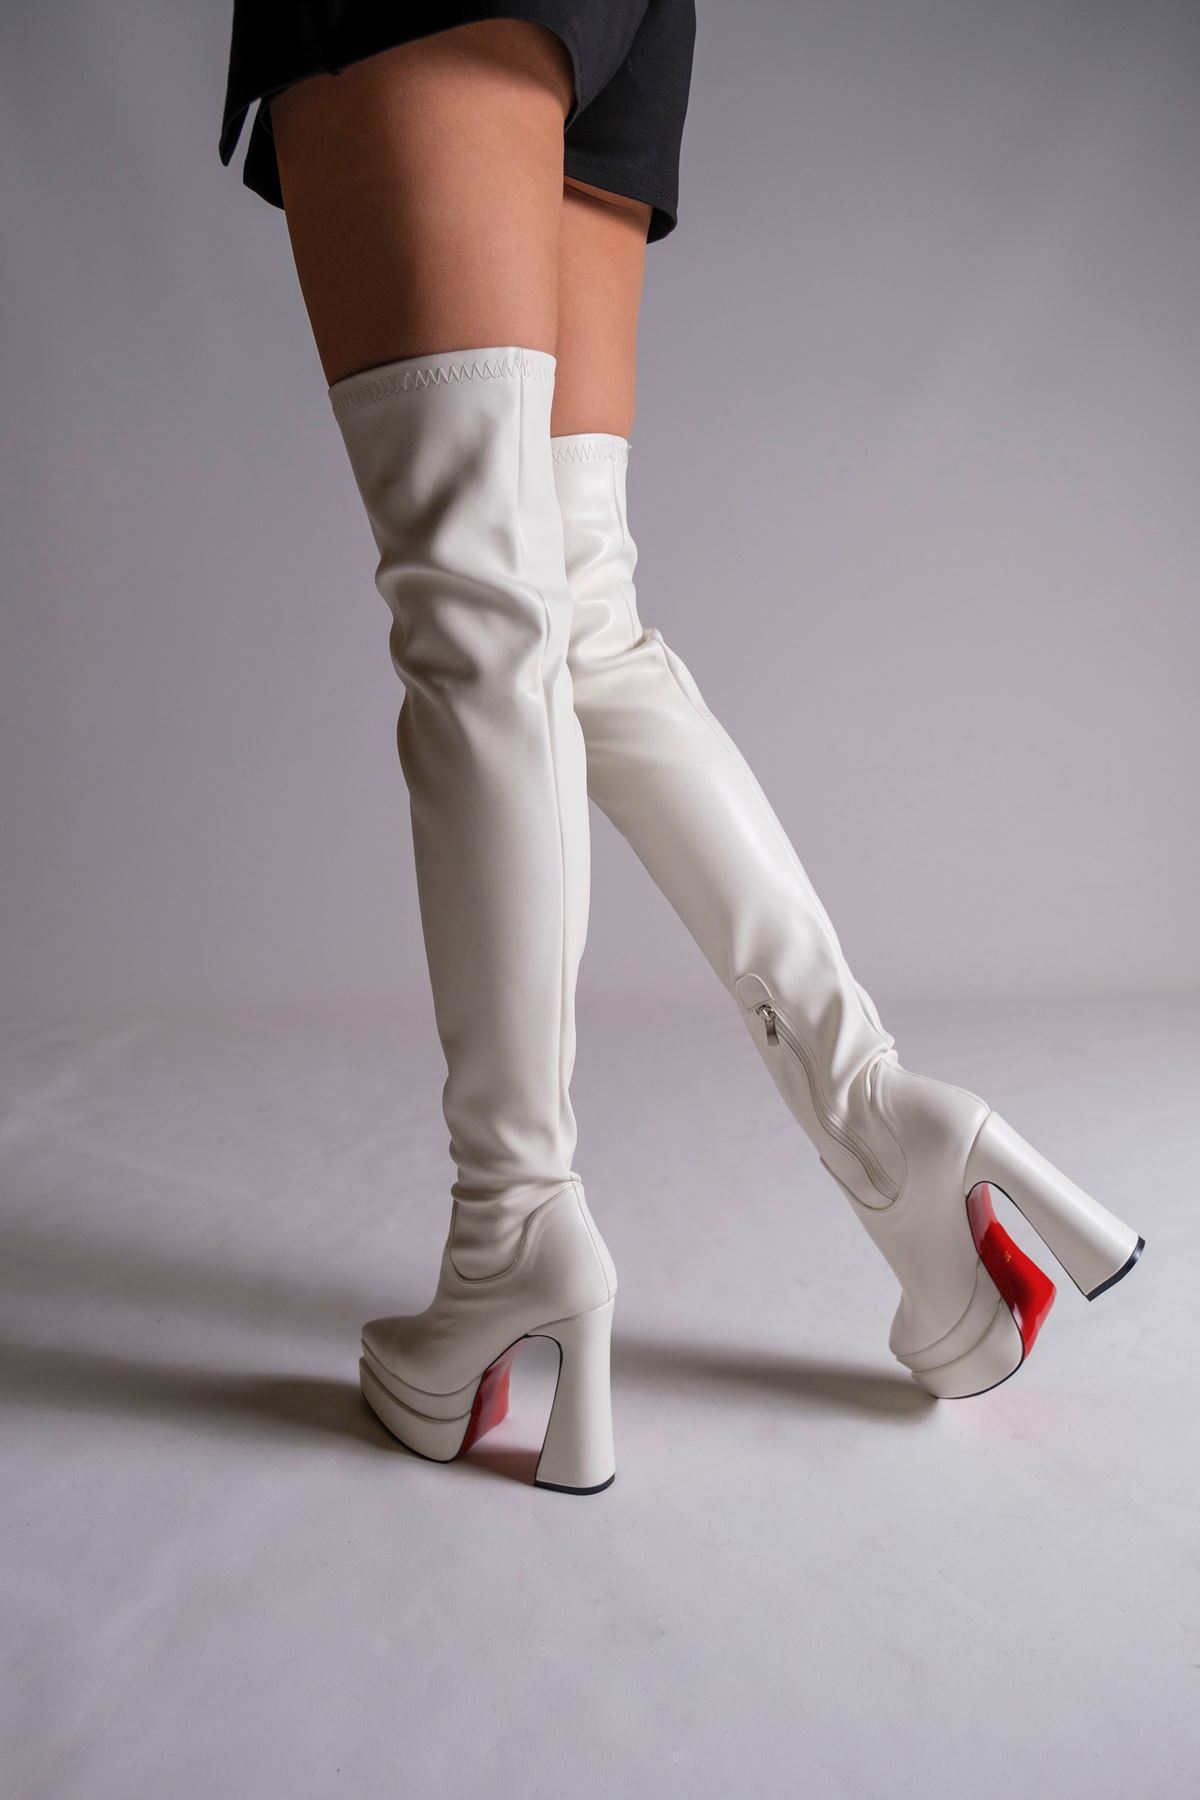 Beyaz Cilt Çift  Platform Tasarım Kadın Çizme Yüksek Topuklu Ayakkabı Brewery